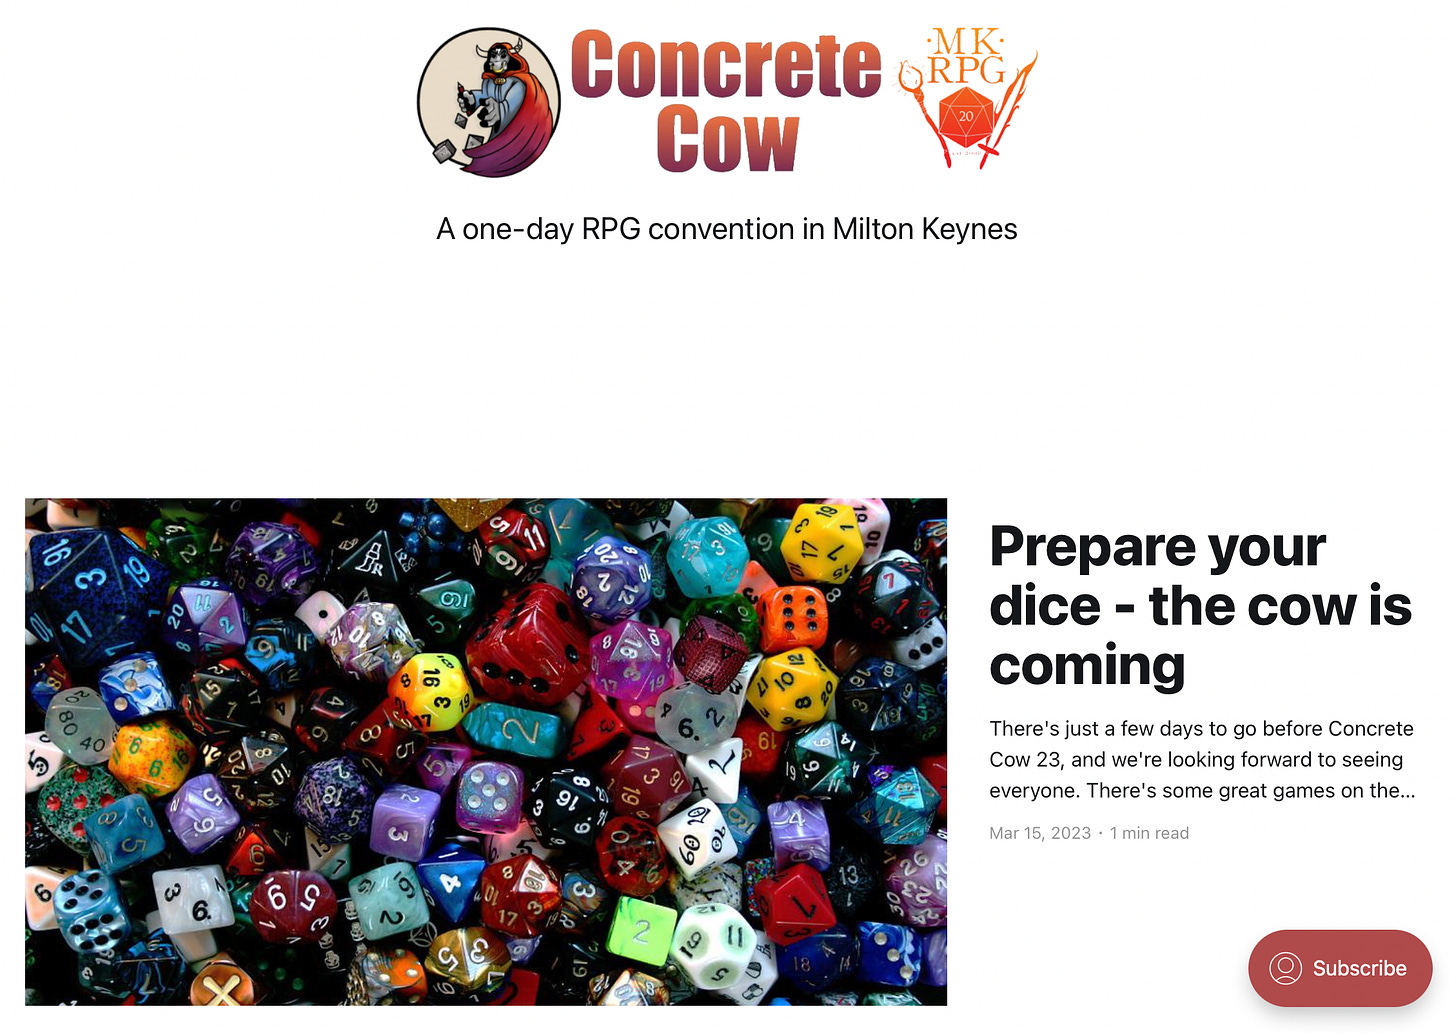 Concrete Cow website page image